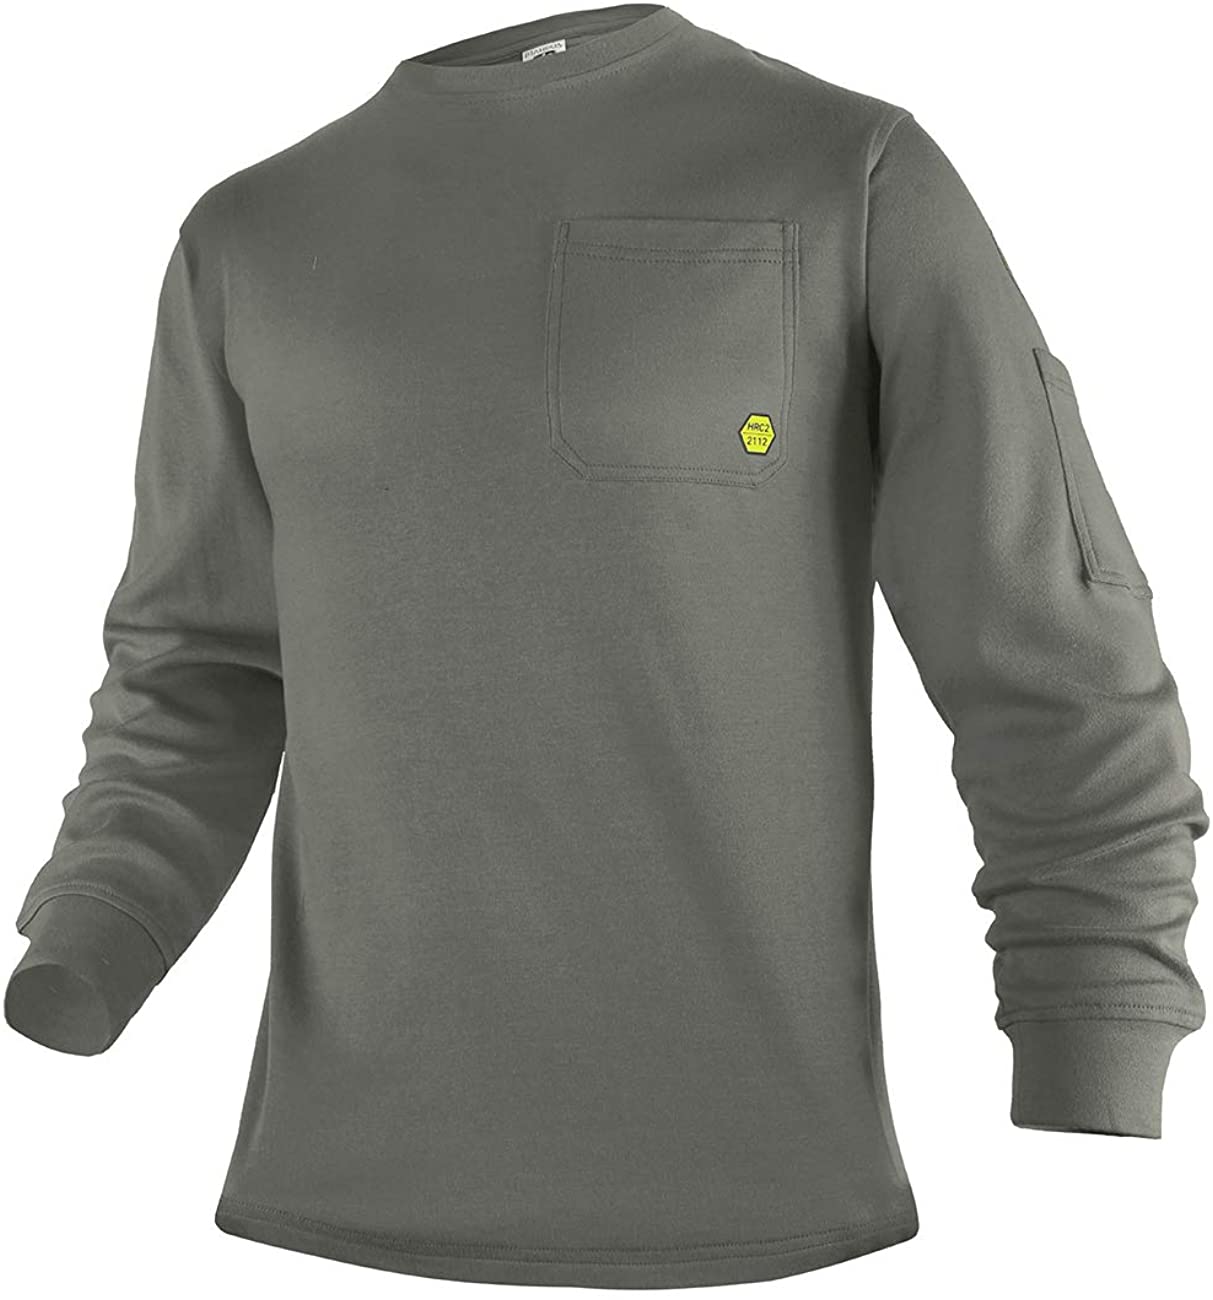 Titicaca FR T-shirt Flame Resistant Cotton Men's Long Sleeve Khaki Round T-shirt 